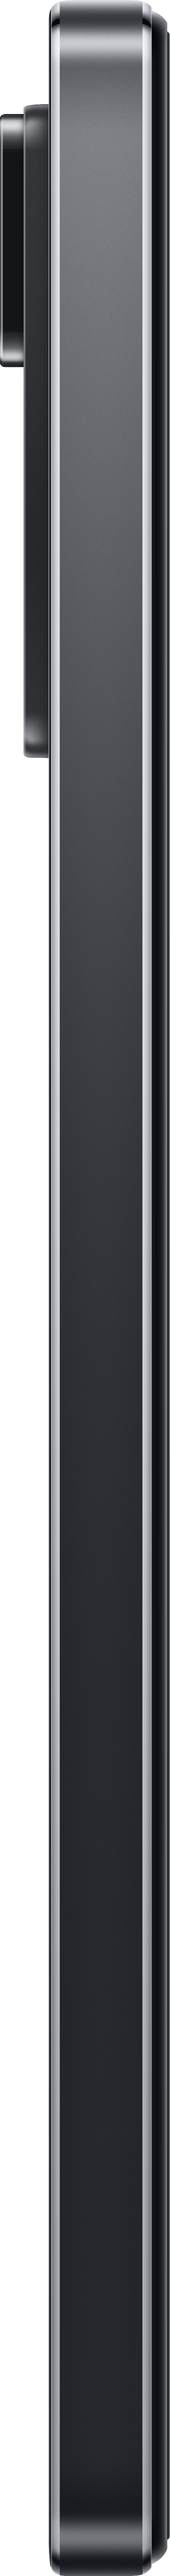 XIAOMI Redmi 11 Graphite Gray SIM Note Pro Dual 128 GB